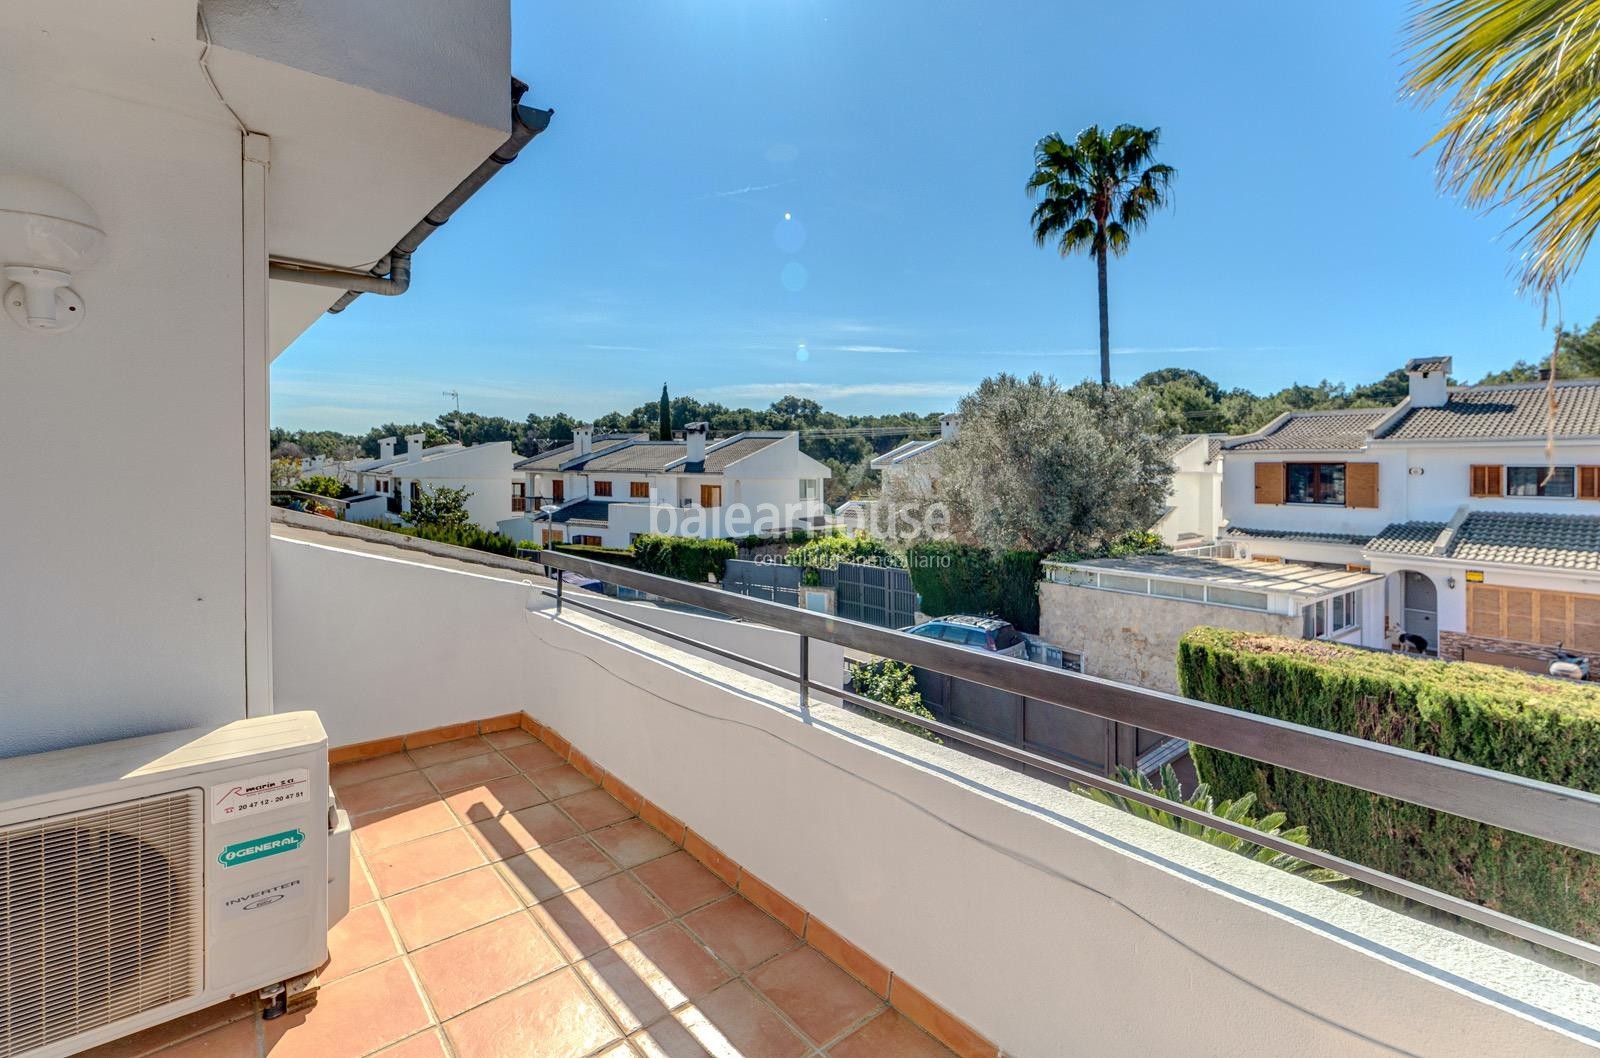 Excelente casa orientada al sur con terrazas y jardín en la verde zona de Sa Teulera en Palma